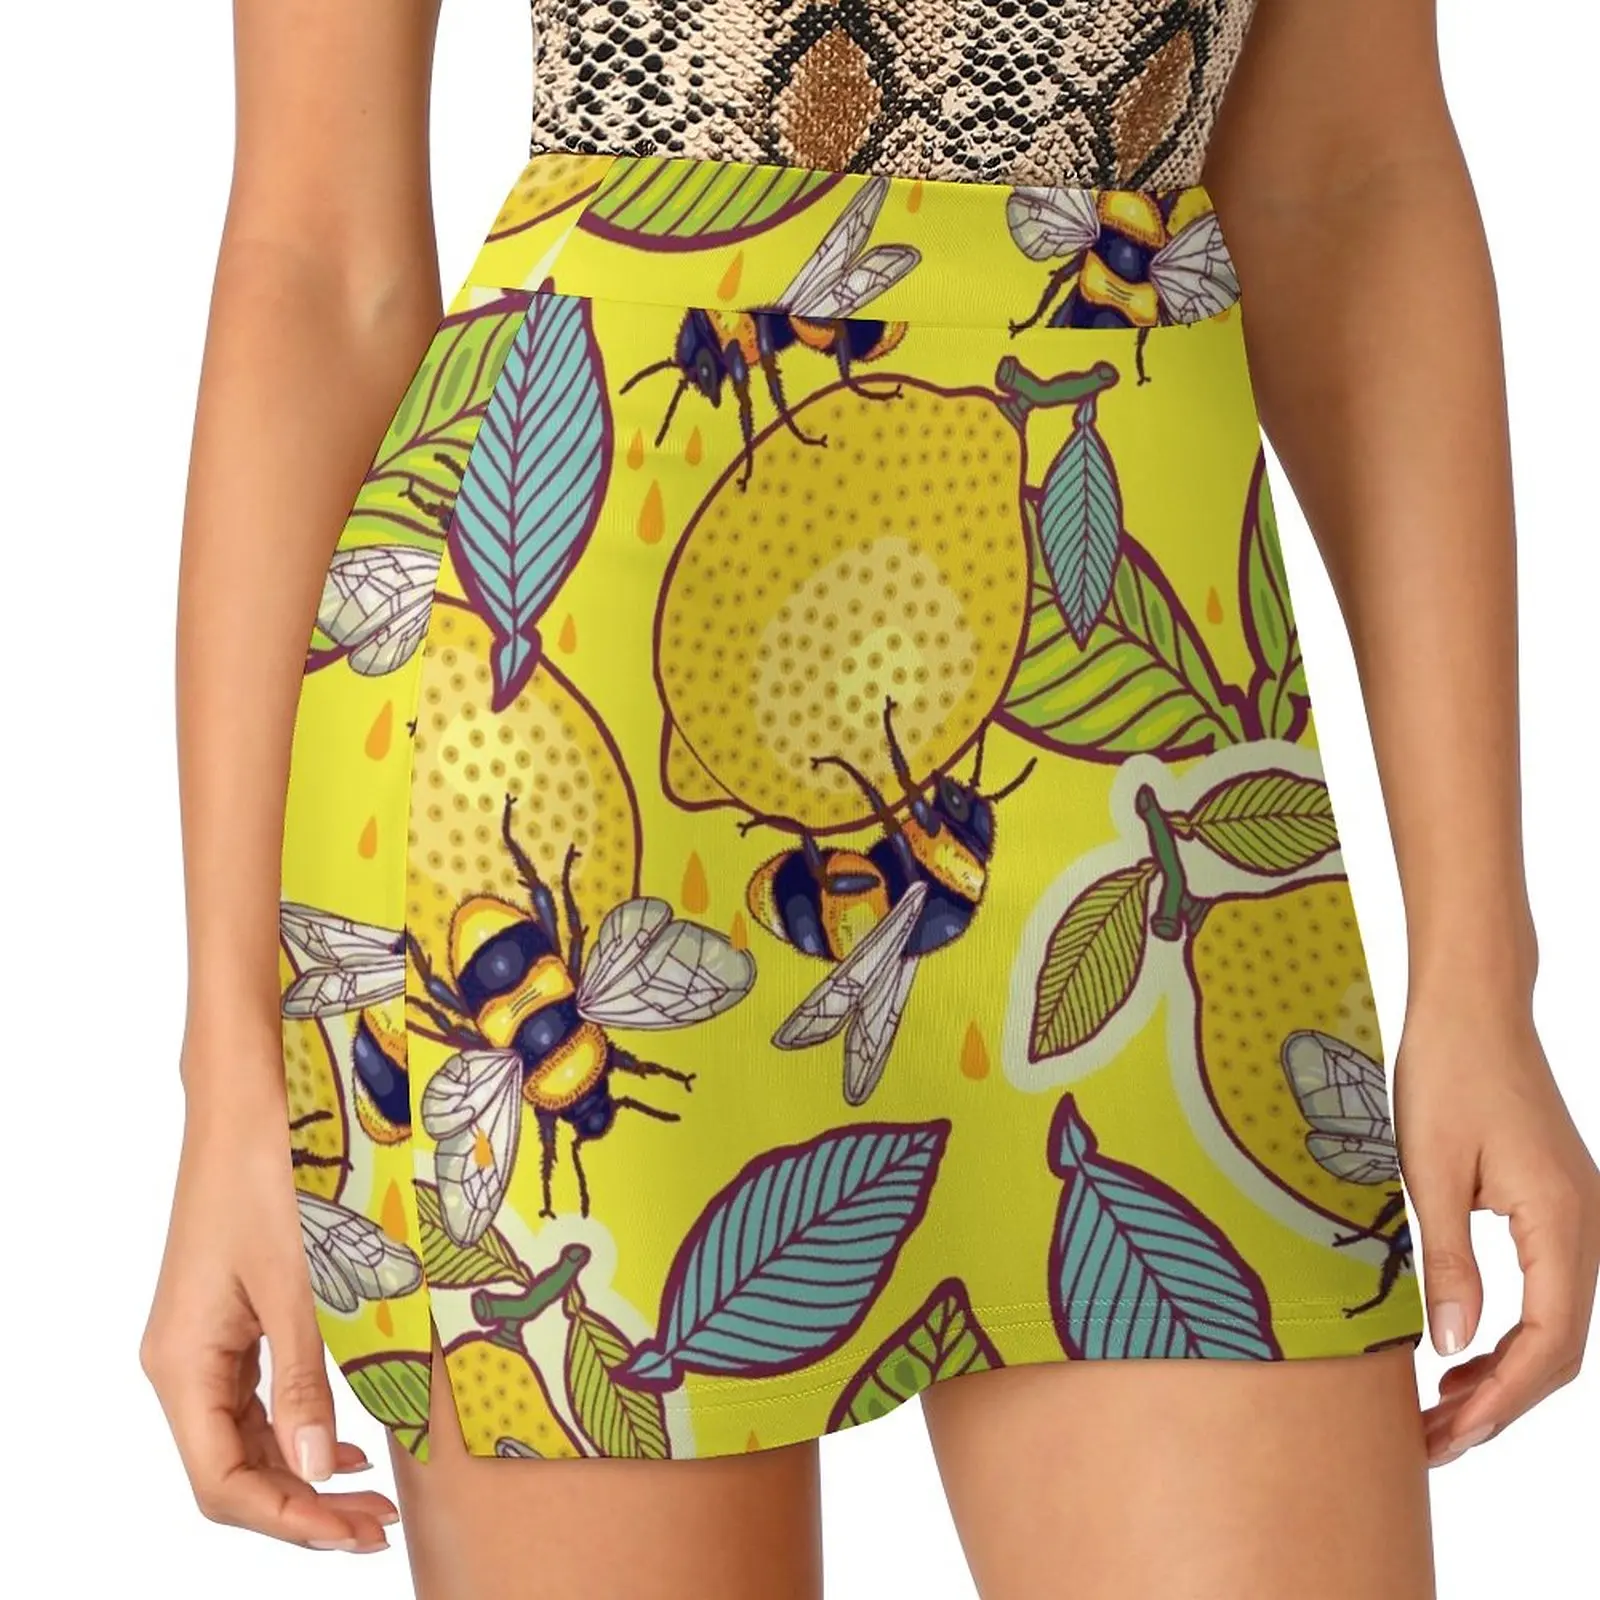 Yellow lemon and bee garden. Light Proof Trouser Skirt korean style skirt Women's summer skirts skirts for womans cute skirt маркер copic y13 лимонный lemon yellow